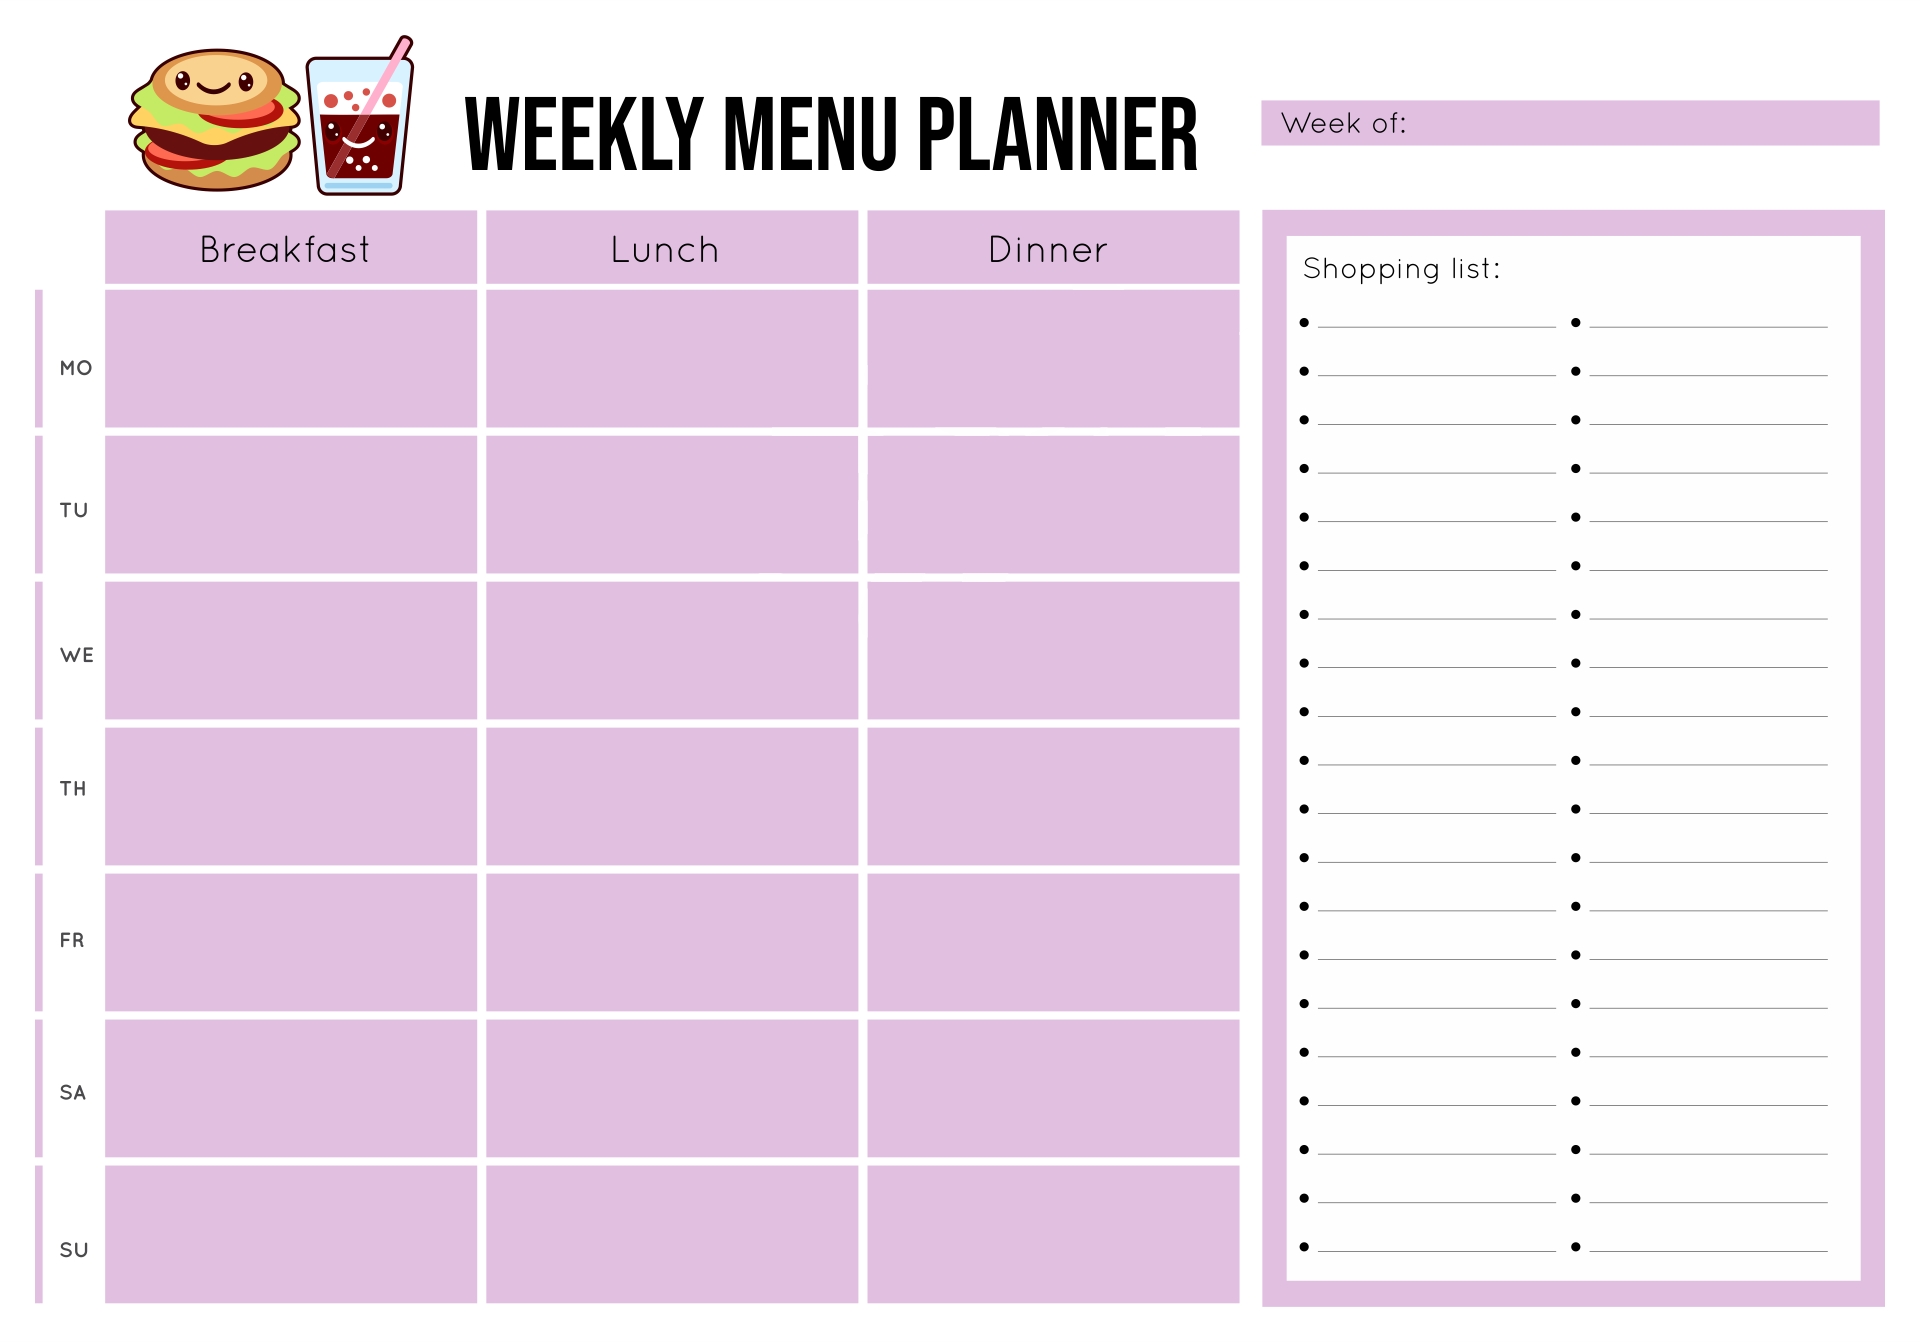 Menu Planning Template Free Printable : Meal Planning Template – Free Within Menu Planning Template Word